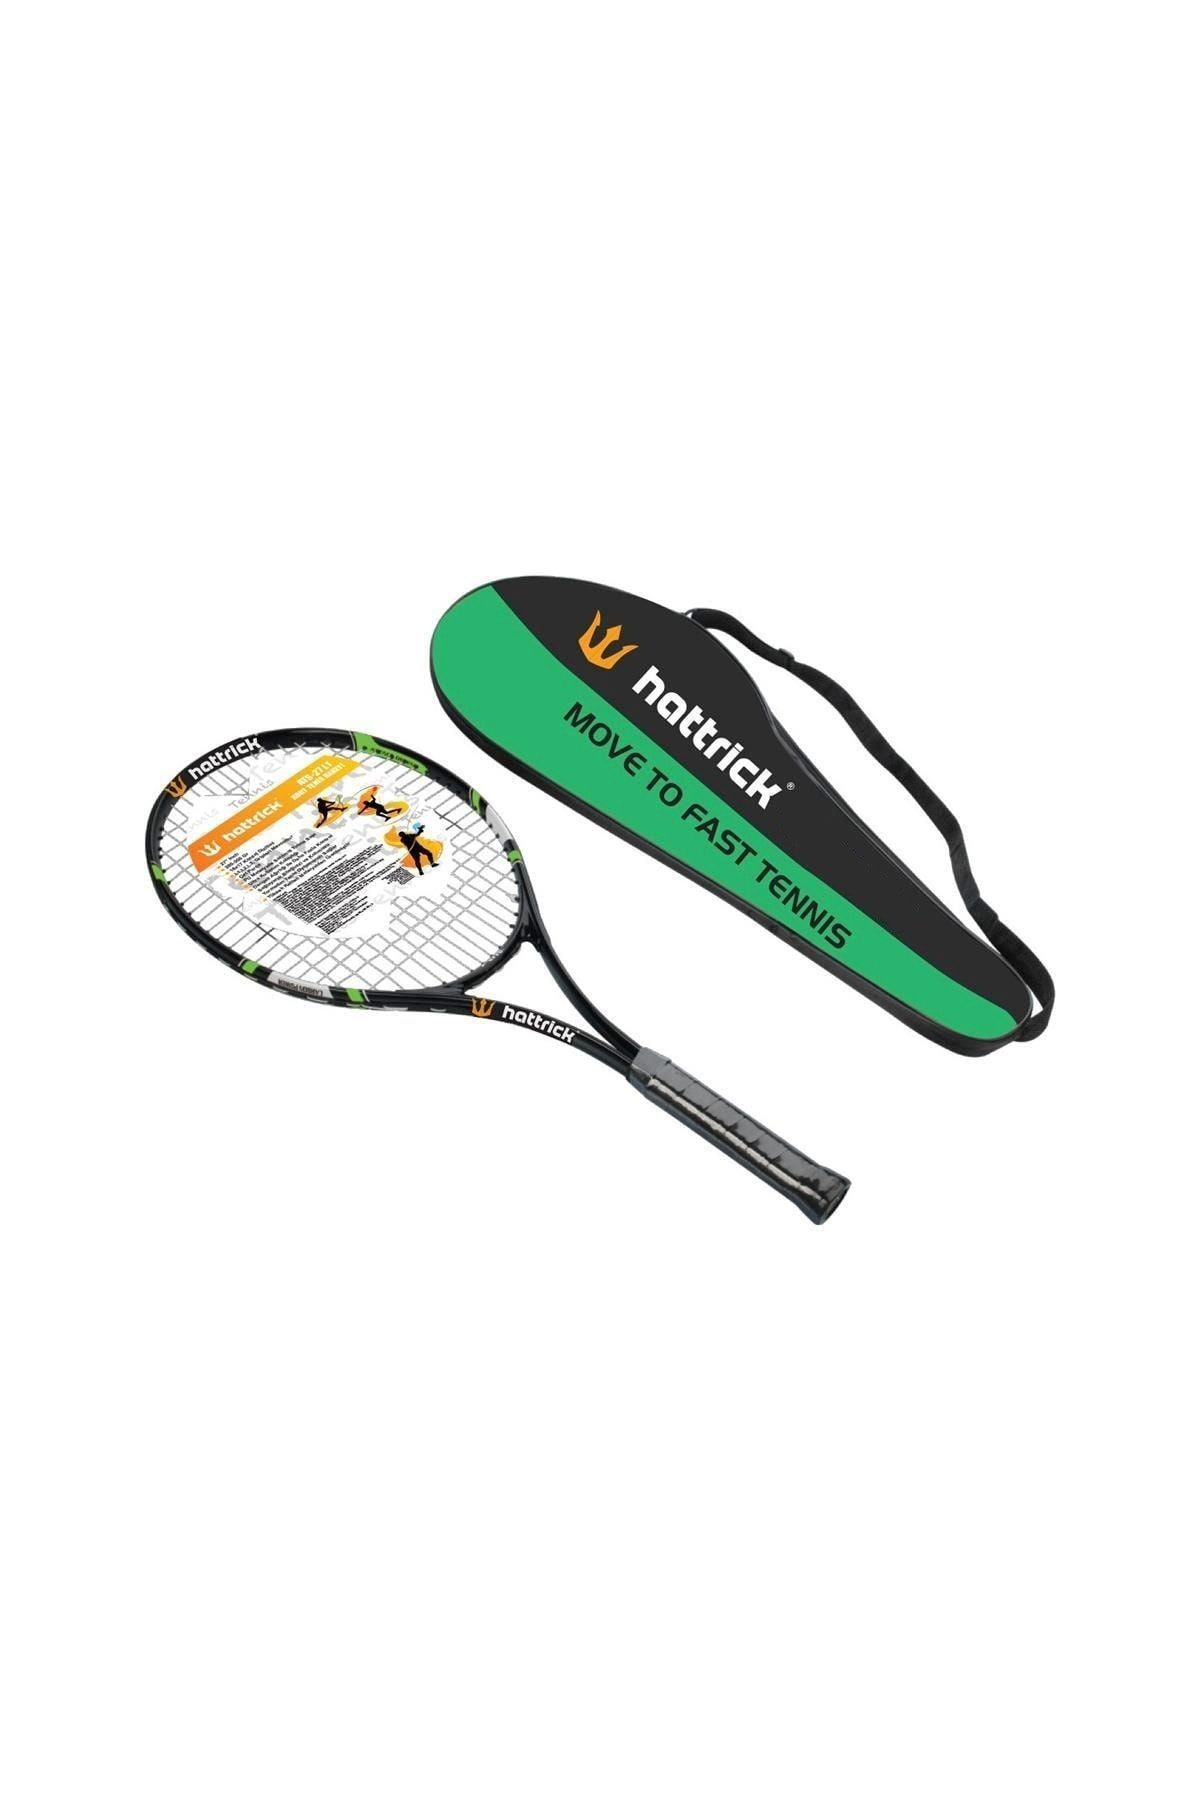 Hattrick Ats Çocuk Tenis Raketi 23 Inch Yeşil